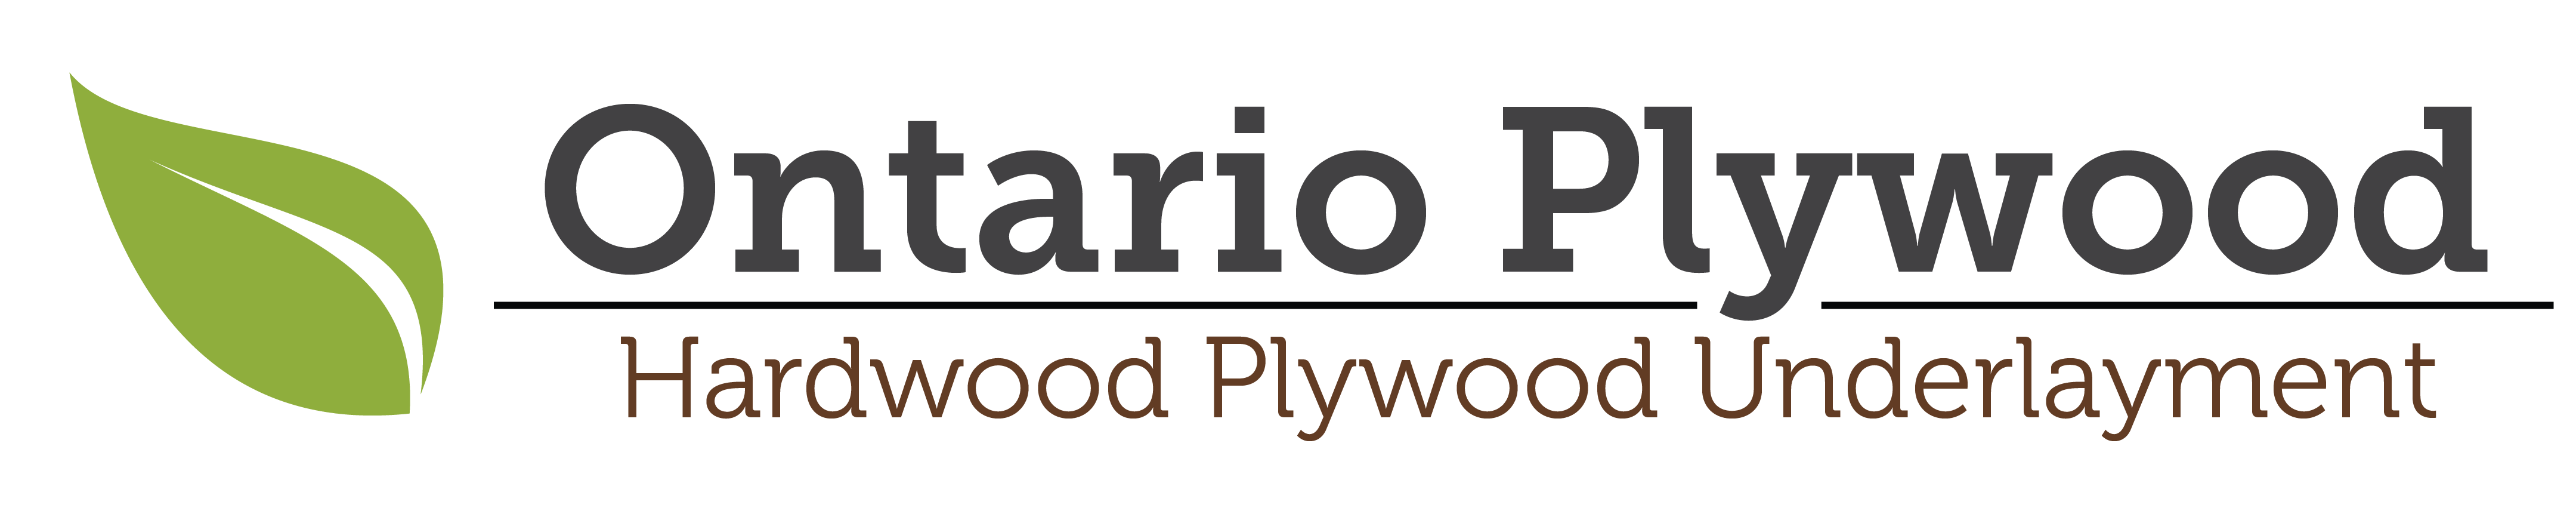 Ontario Plywood